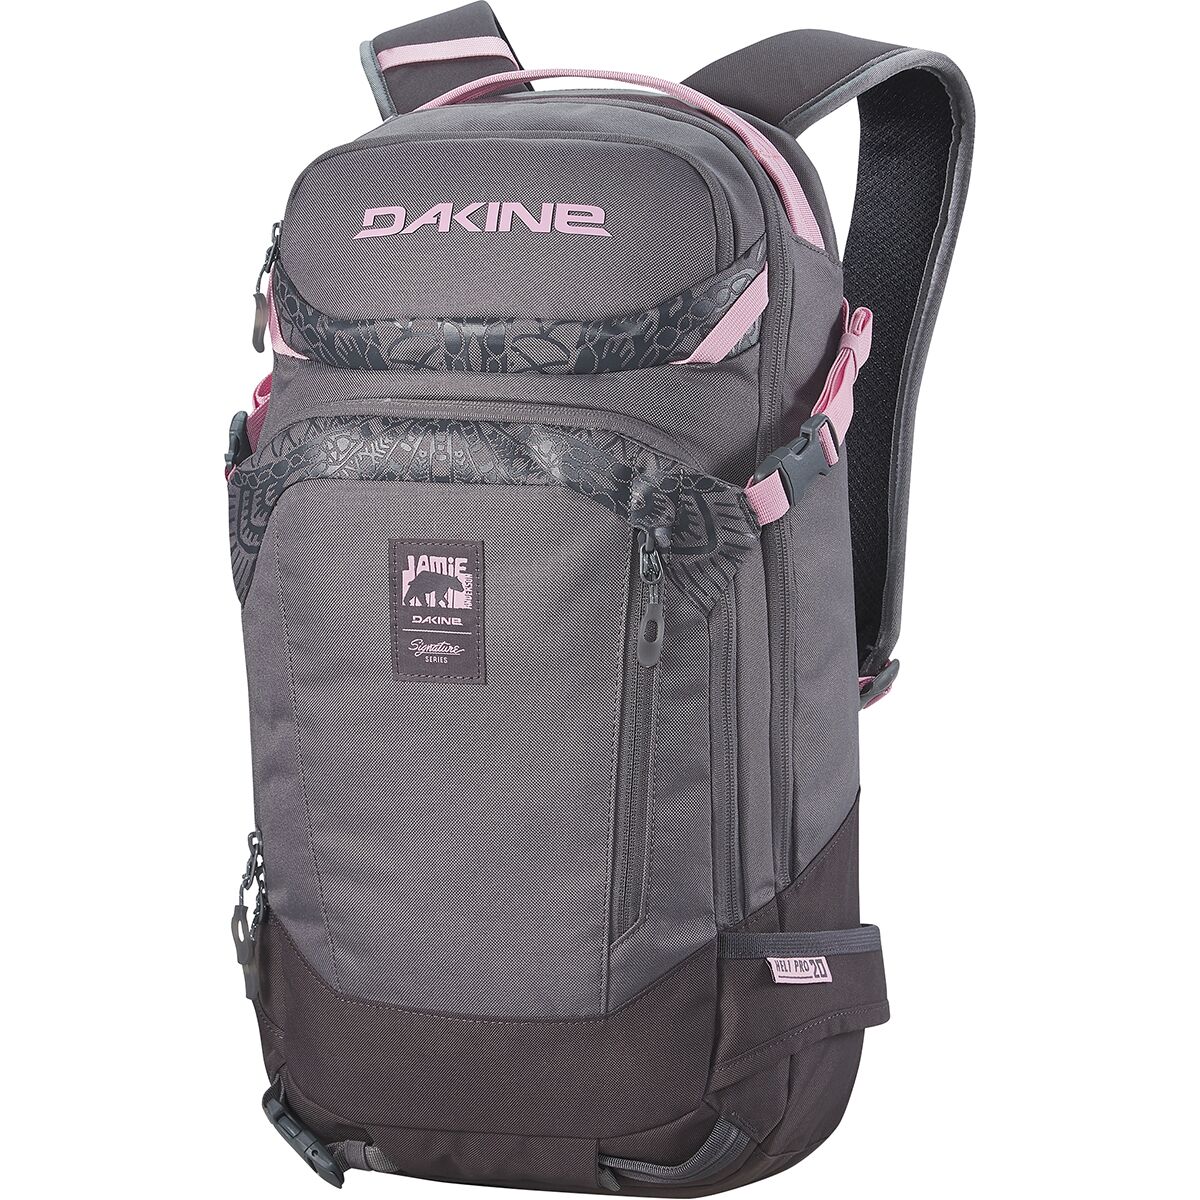 DAKINE Team Heli Pro 20L Backpack - Women's